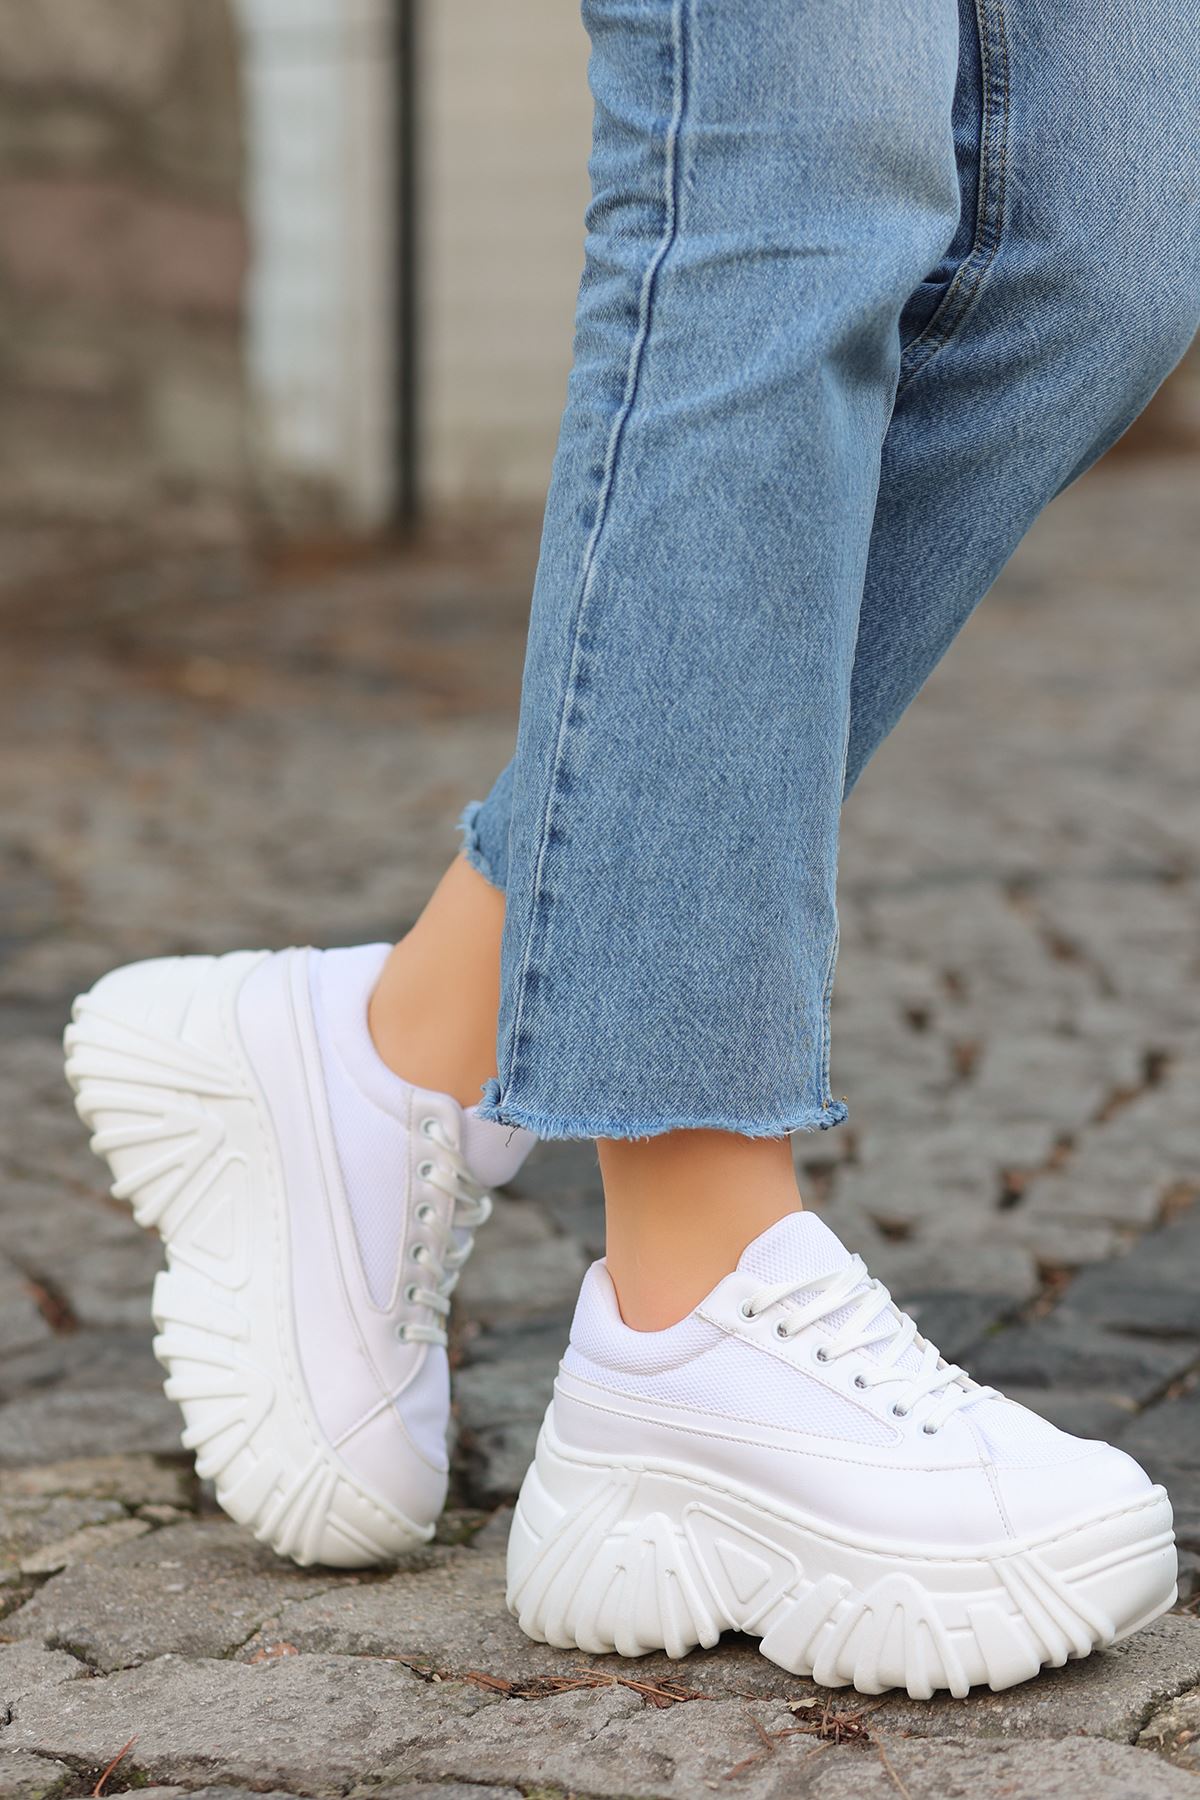 Erma File Detaylı Bağcıklı Kadın Spor Ayakkabı Beyaz